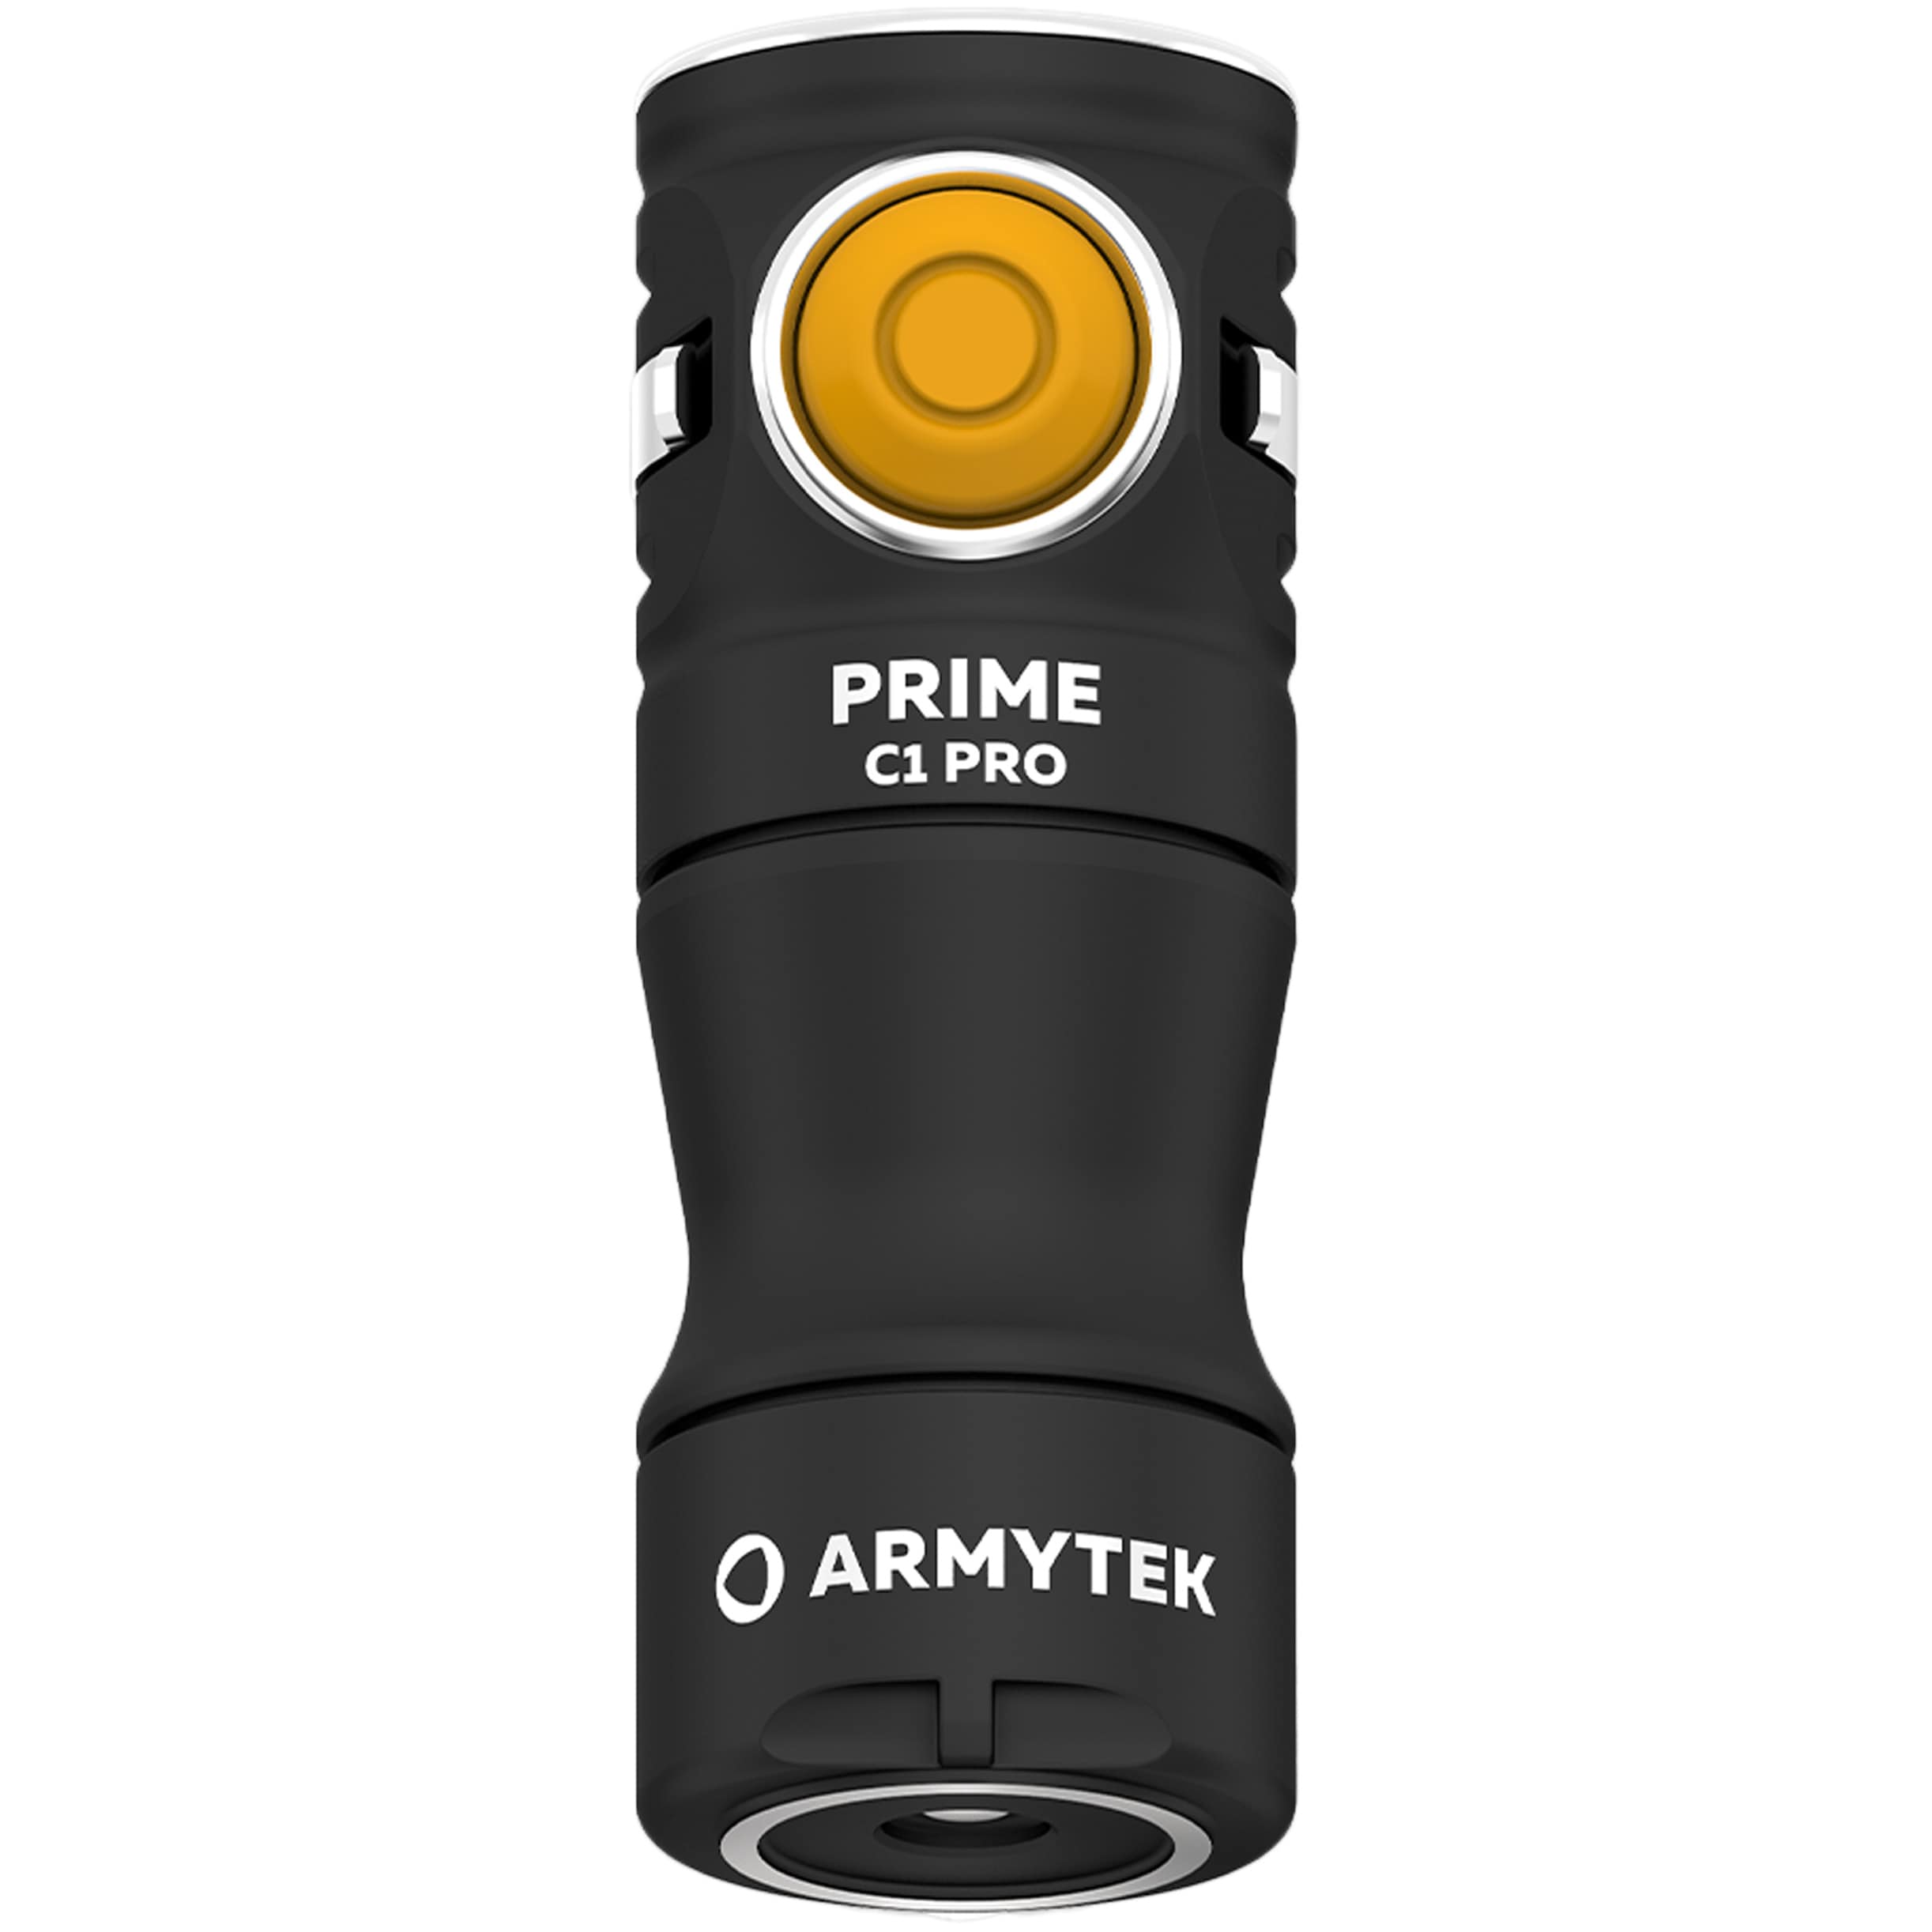 Ліхтарик Armytek Prime C1 Pro Magnet USB Warm - 930 люменів